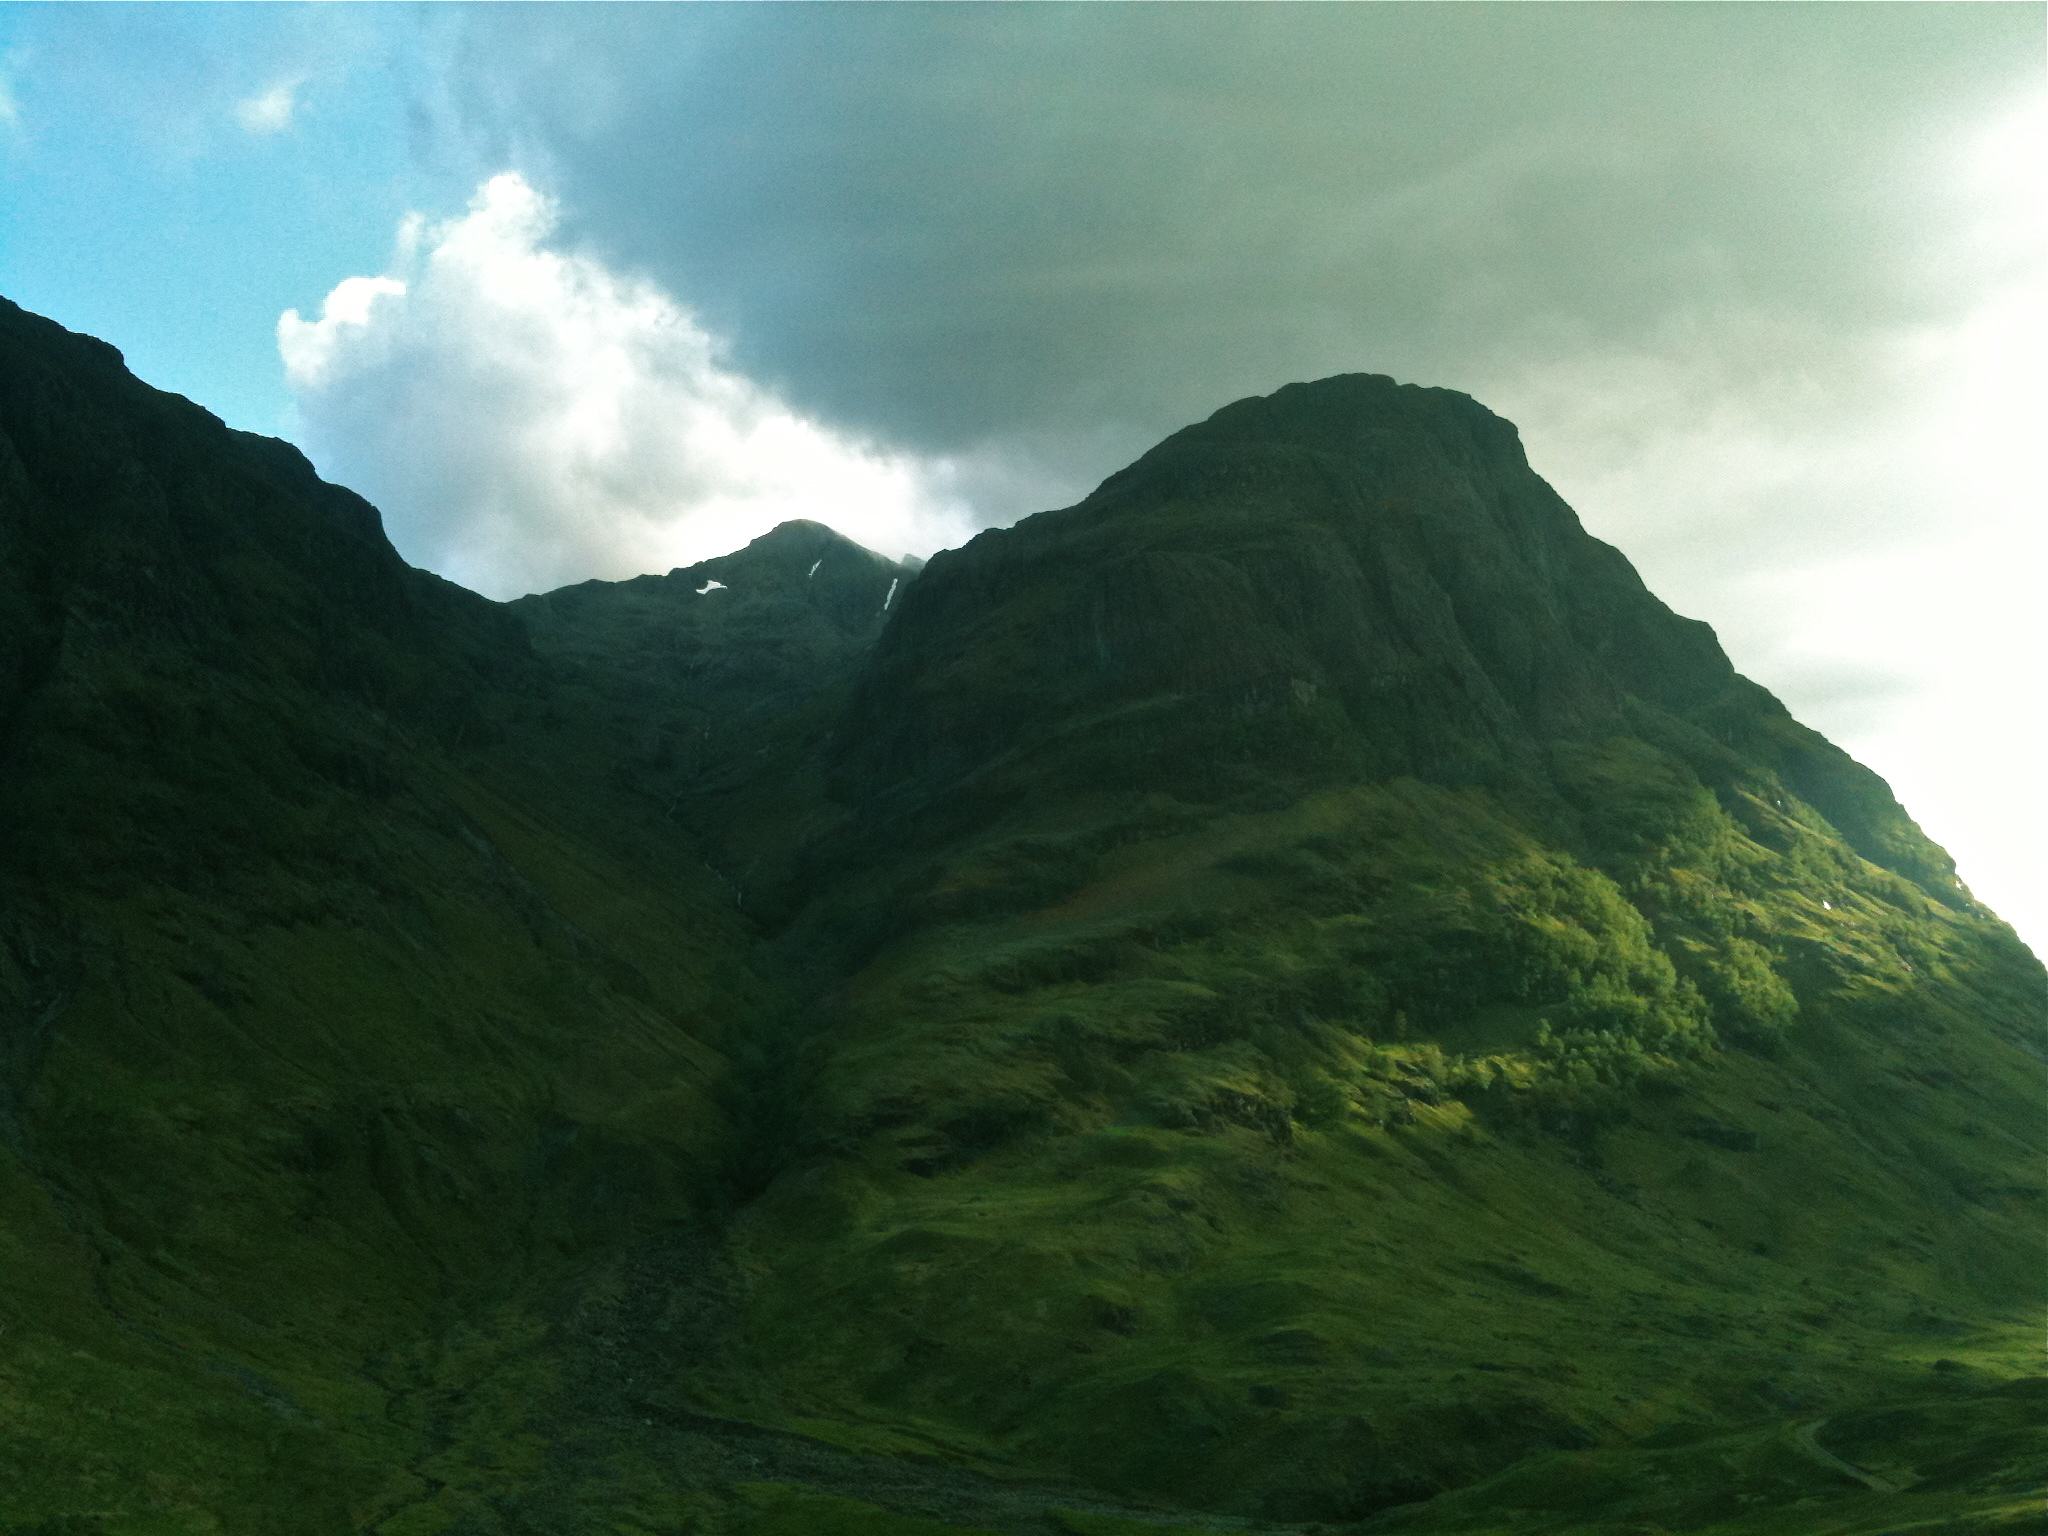 Glen Coe - a Highland valley, Scotland